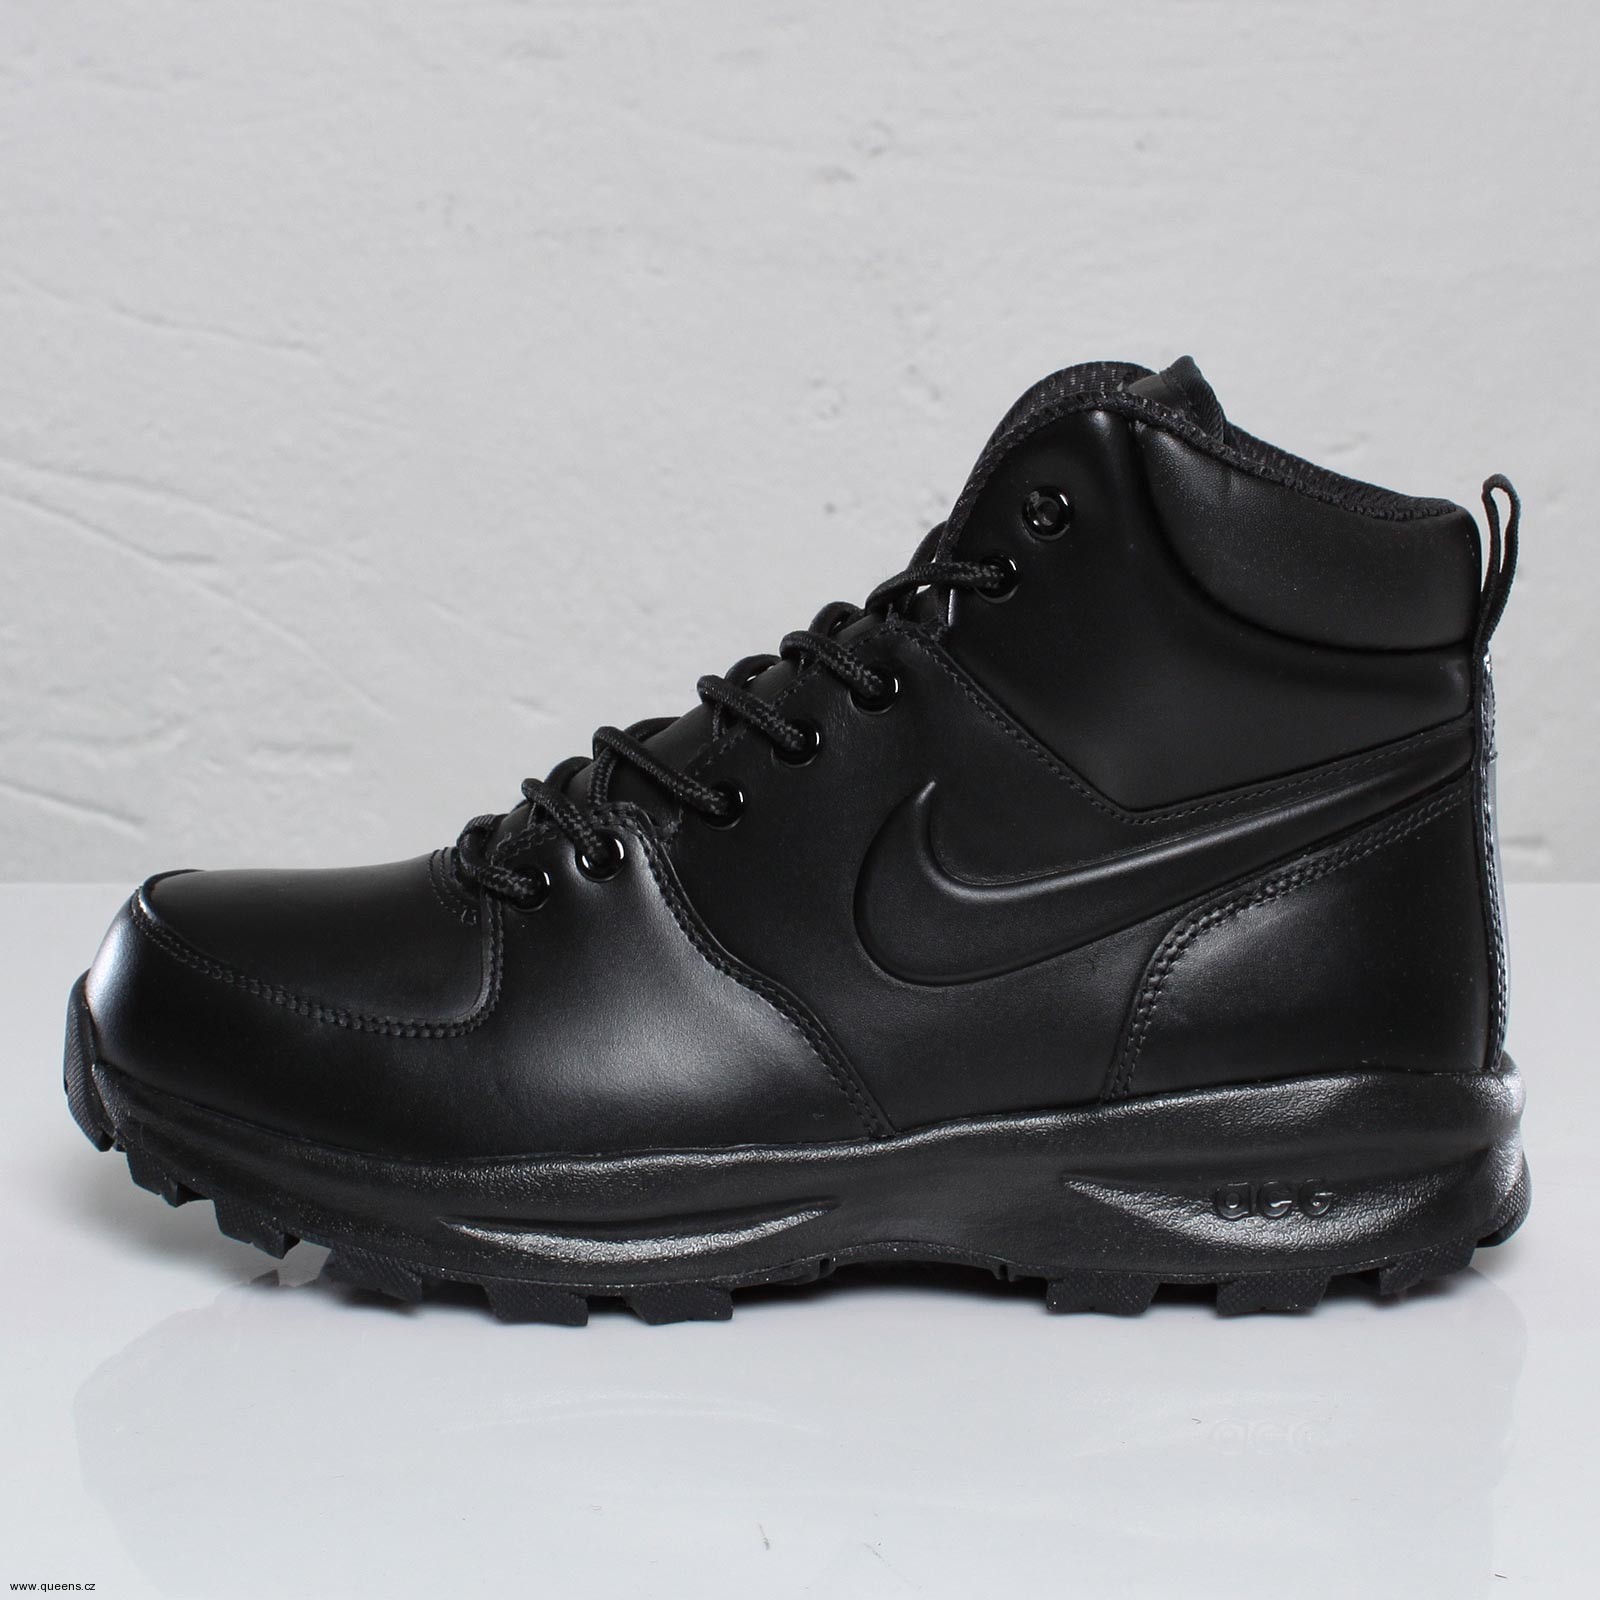 Nike Boots exkluzivně v Queensu / Zima nemá šanci (http://www.stylehunter.cz)